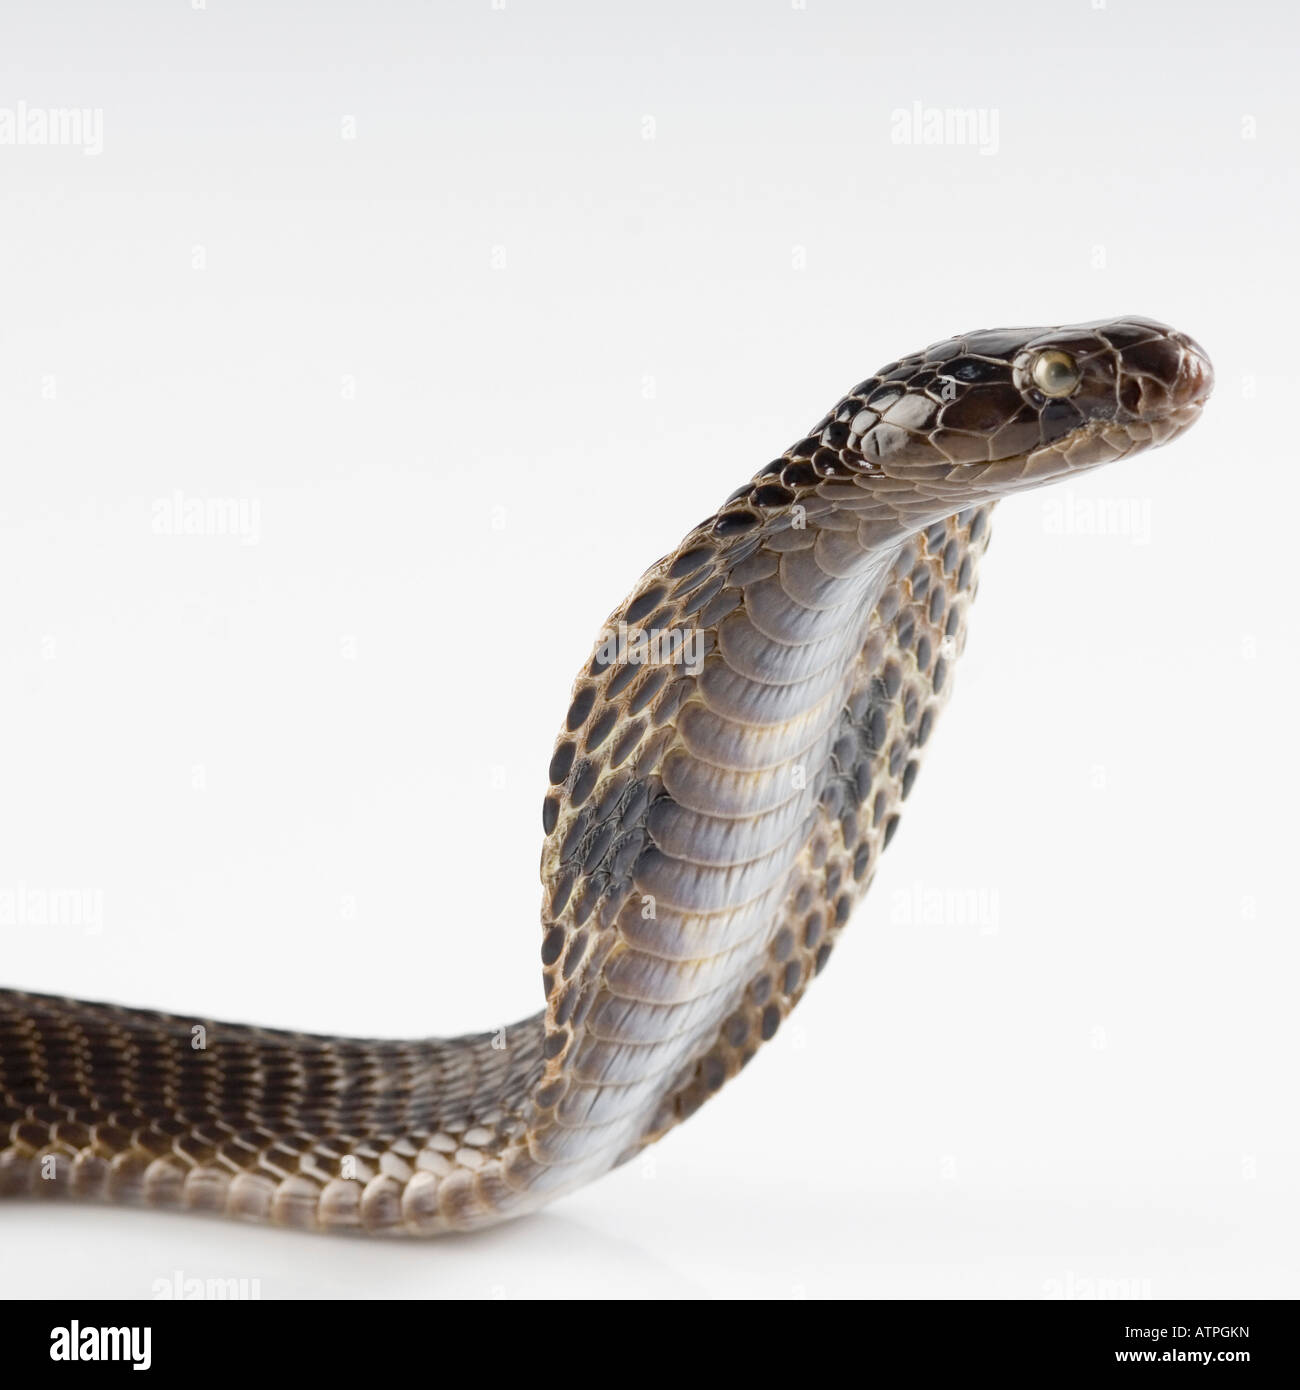 Close-up of a cobra Stock Photo